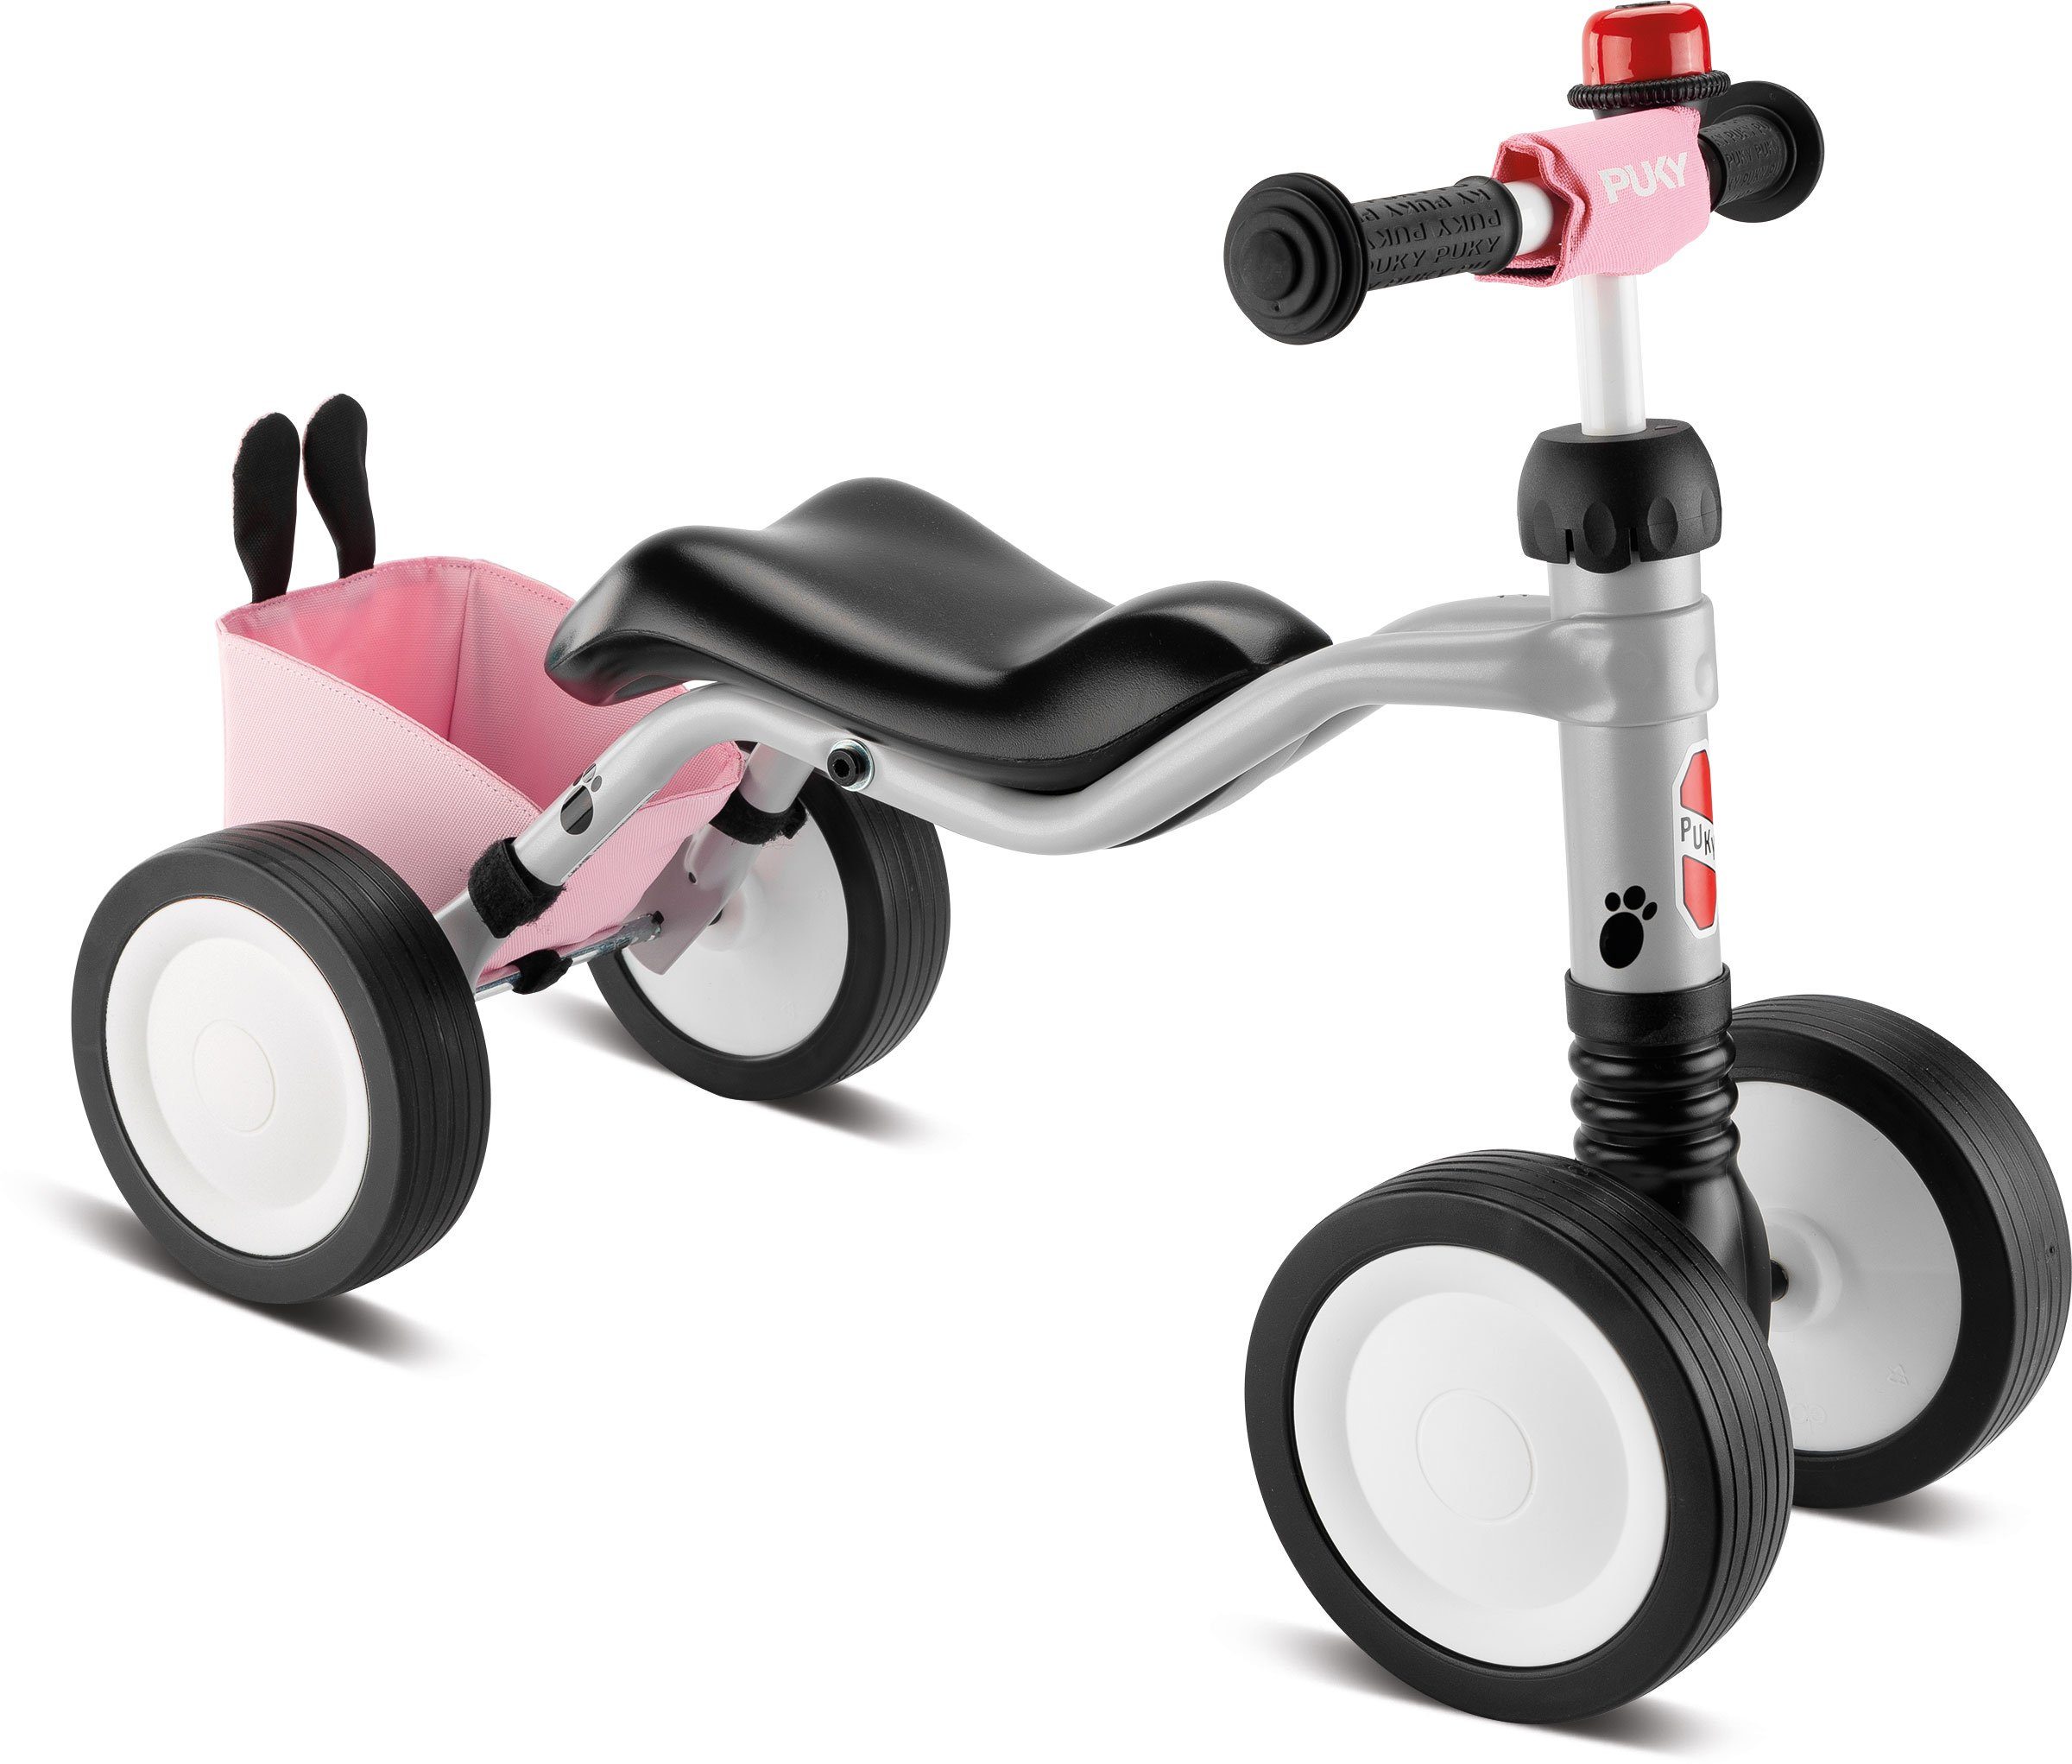 Puky Laufrad Puky Wutsch Laufrad Bundle, sicheres Rutschfahrzeug, Rutschrad für Kleinkinder ab 1 Jahr mit leisen Велосипед біговийn, Lenkeinschlagsbegrenzung und ergonomischem Sitz